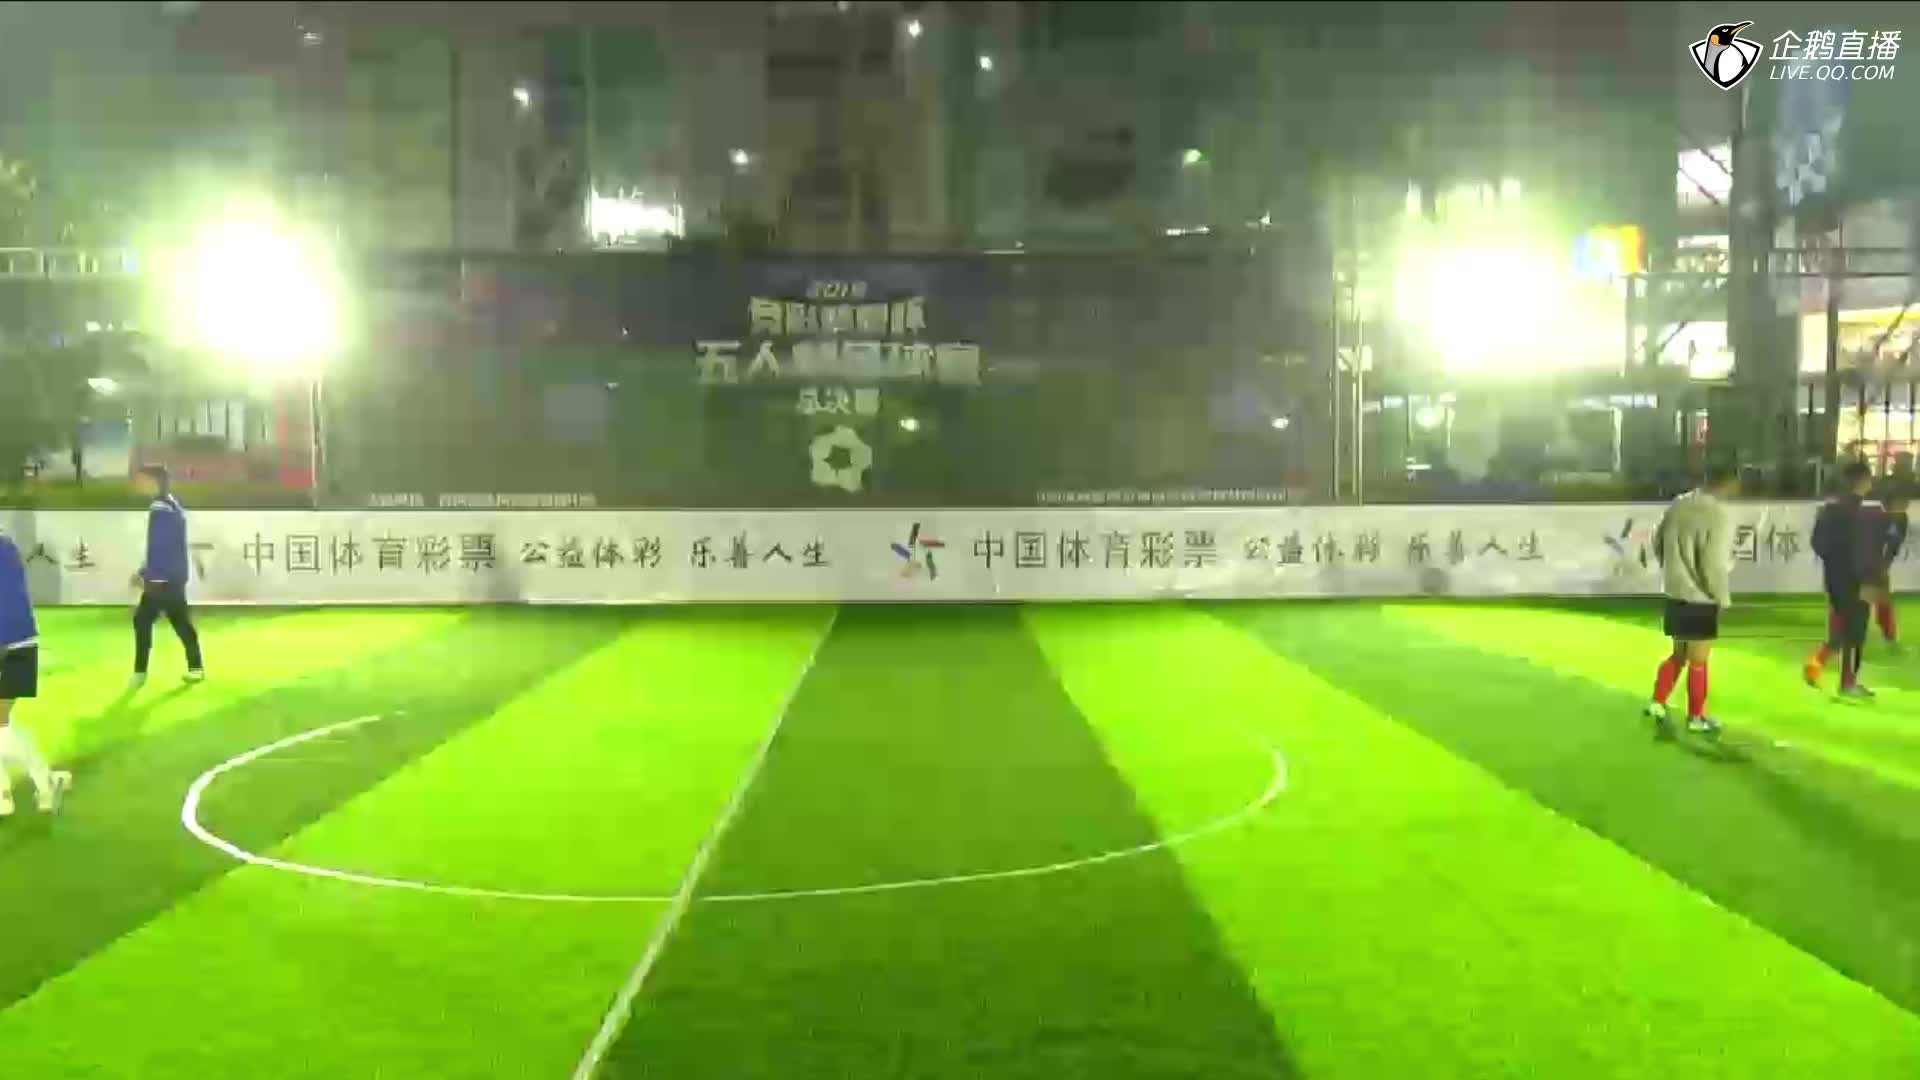 中国体彩竞彩梦想杯足球赛(总决赛)开幕式-足球